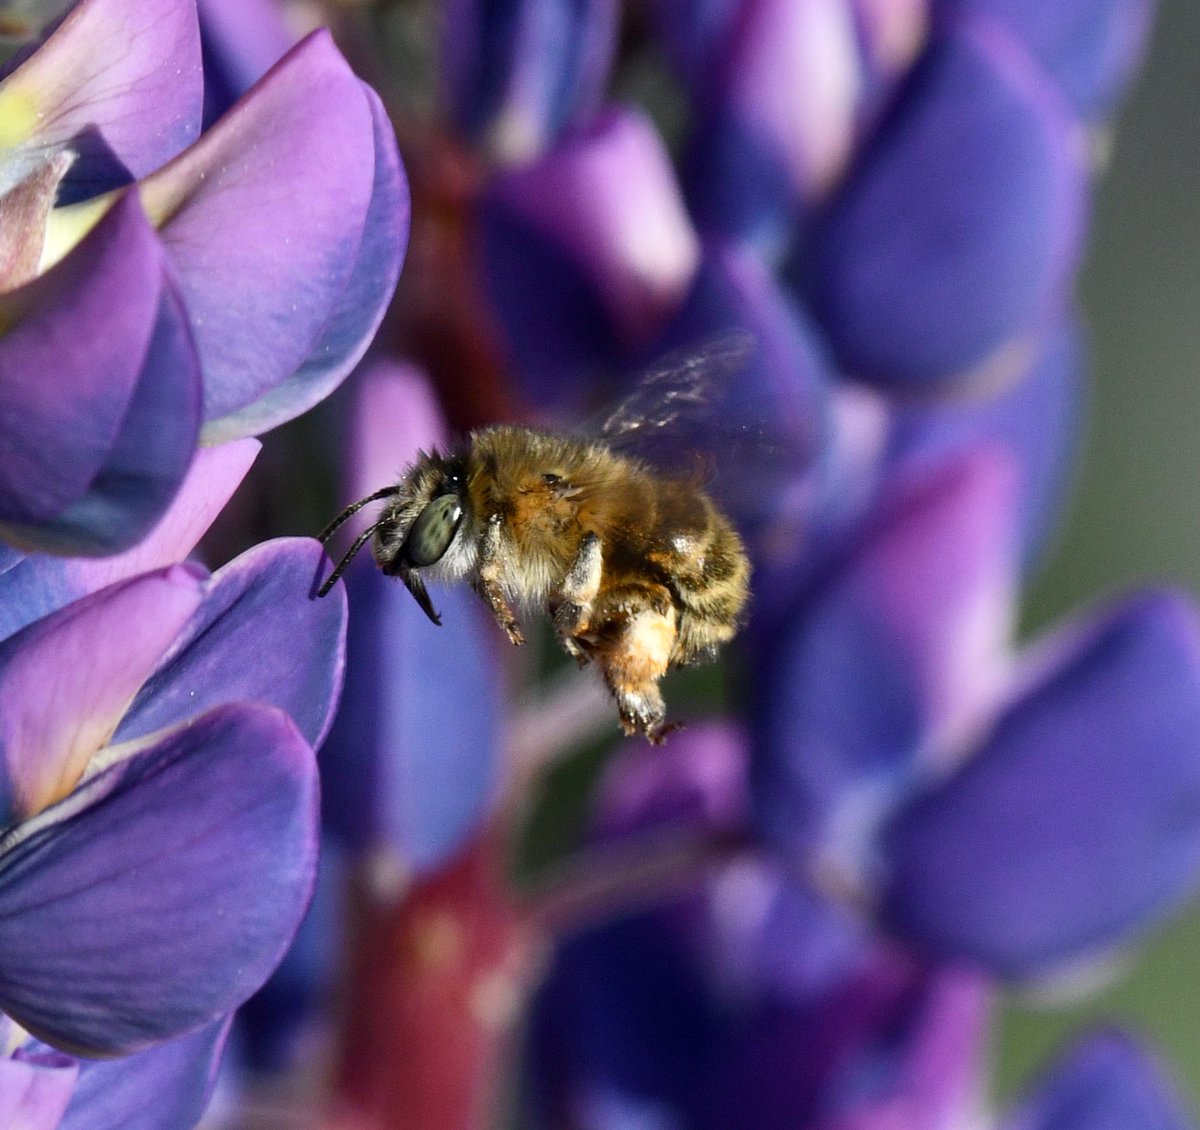 Vasen med lupiner besöktes av ett örtagårdsbi, och en ny art av bi till listan över bin som jag sett i vår trädgård. #biologiskmångfald